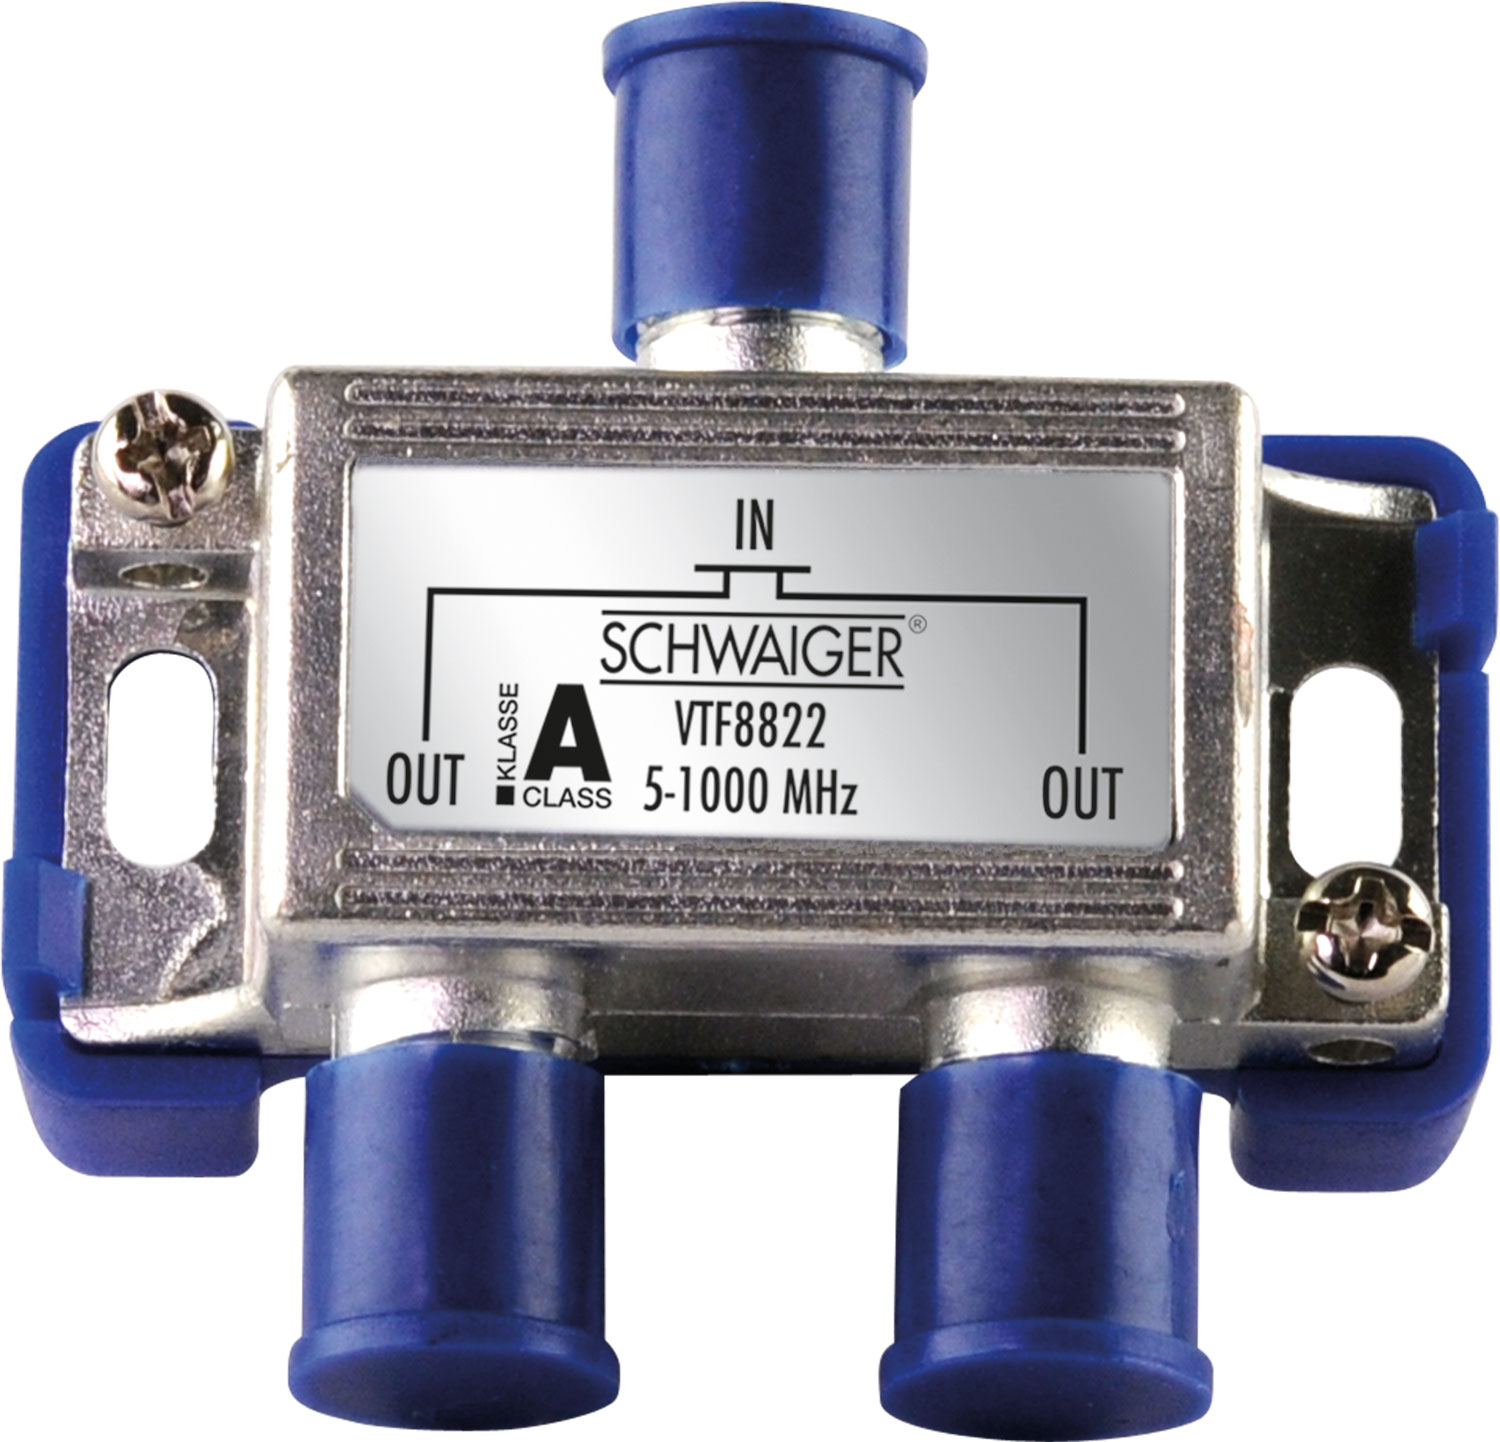 SCHWAIGER -VTF8822 241- 2-fach Verteiler Kabel- für Antennenanlagen und (4 dB)